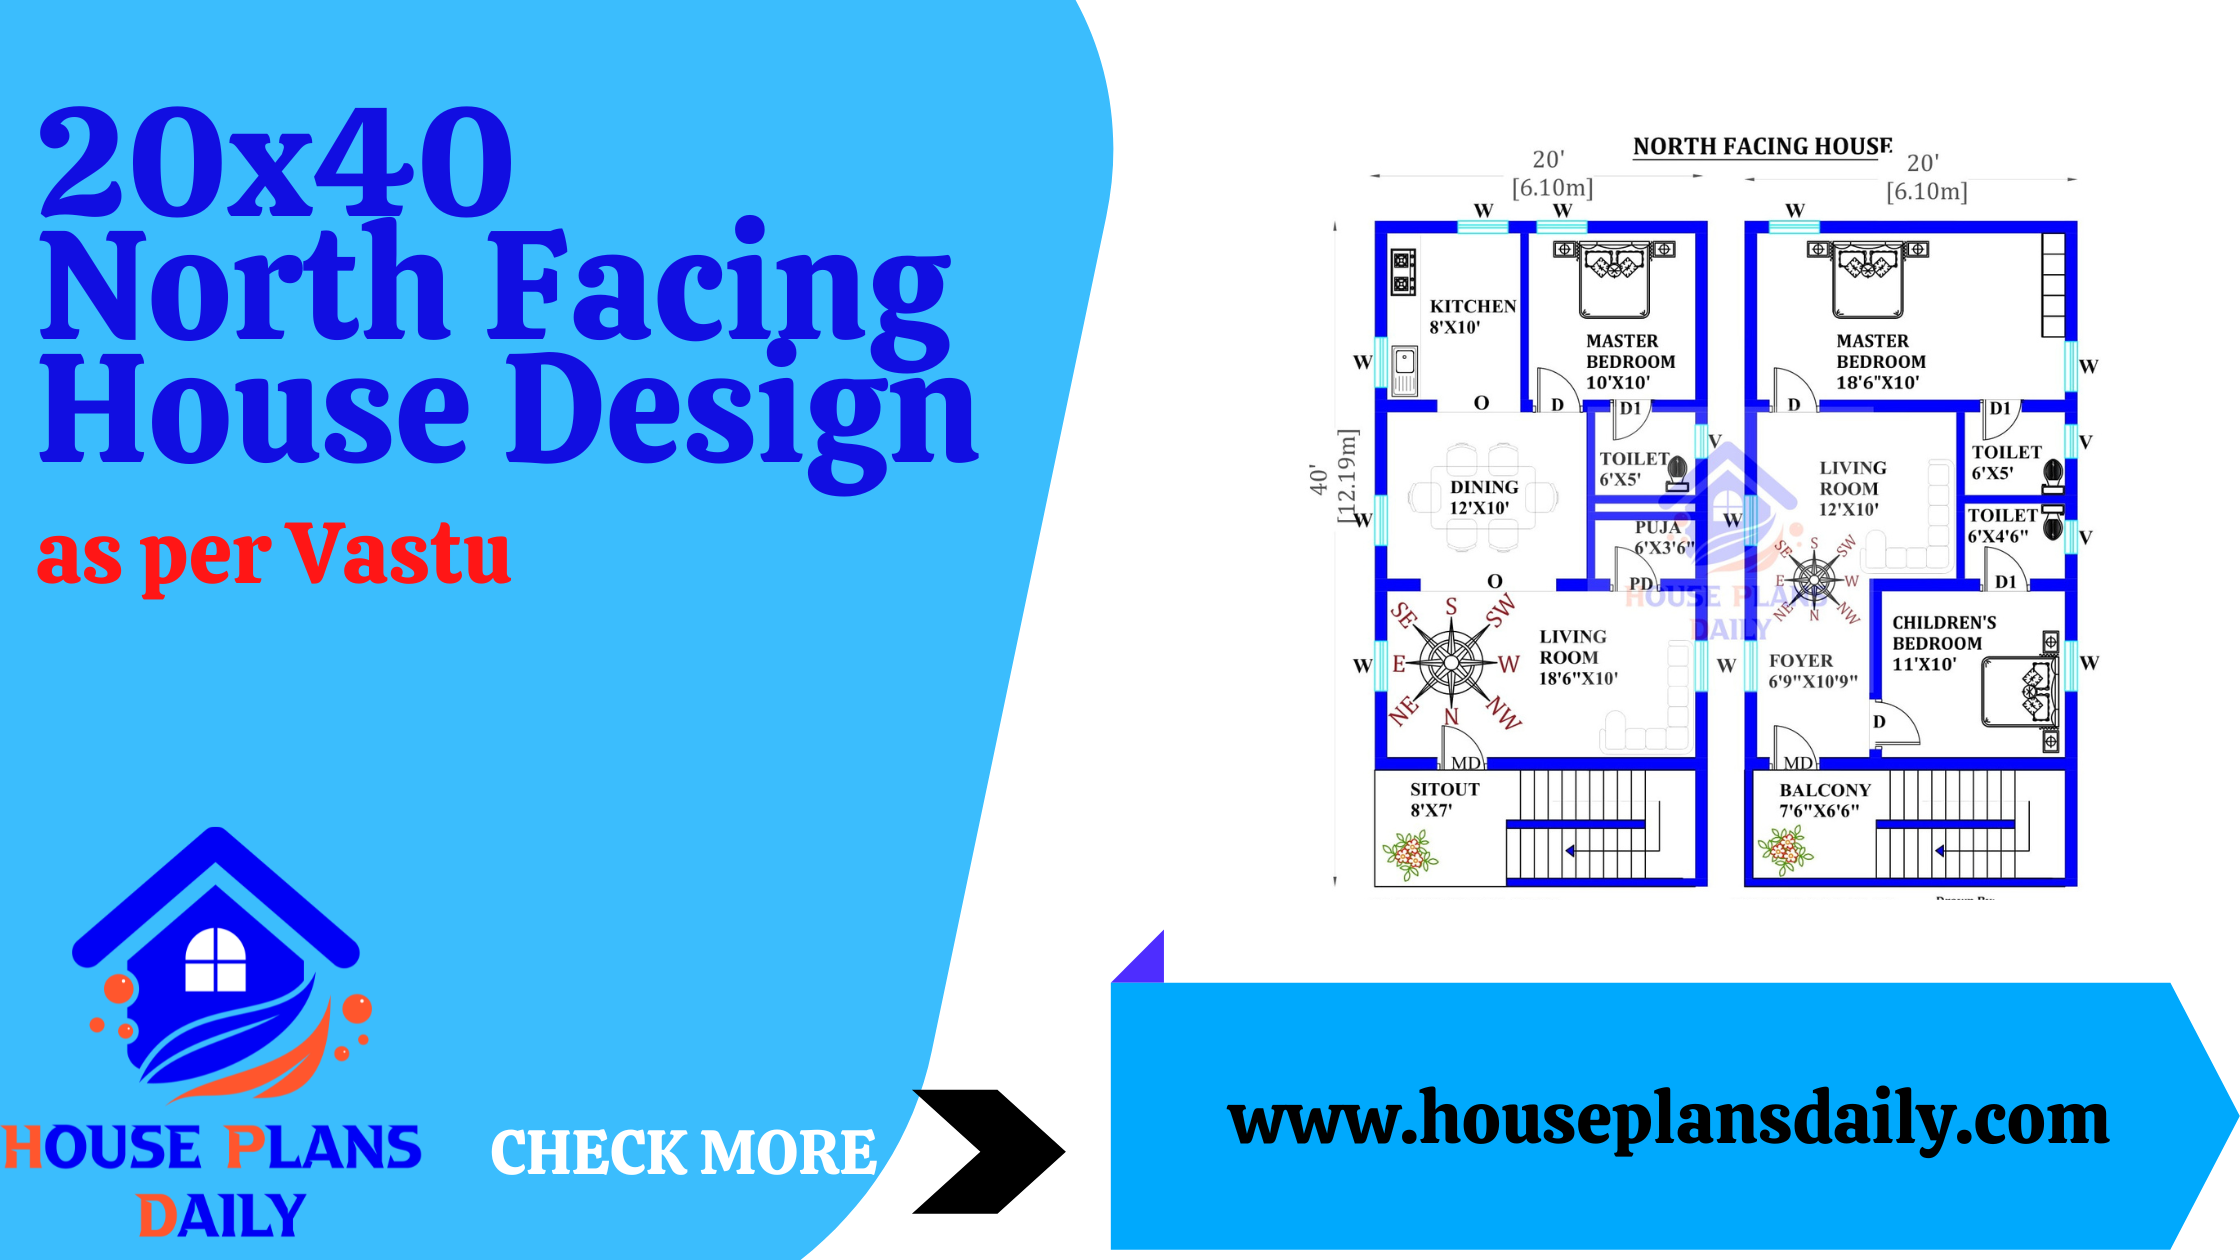 20x40 North Facing House Design as per Vastu